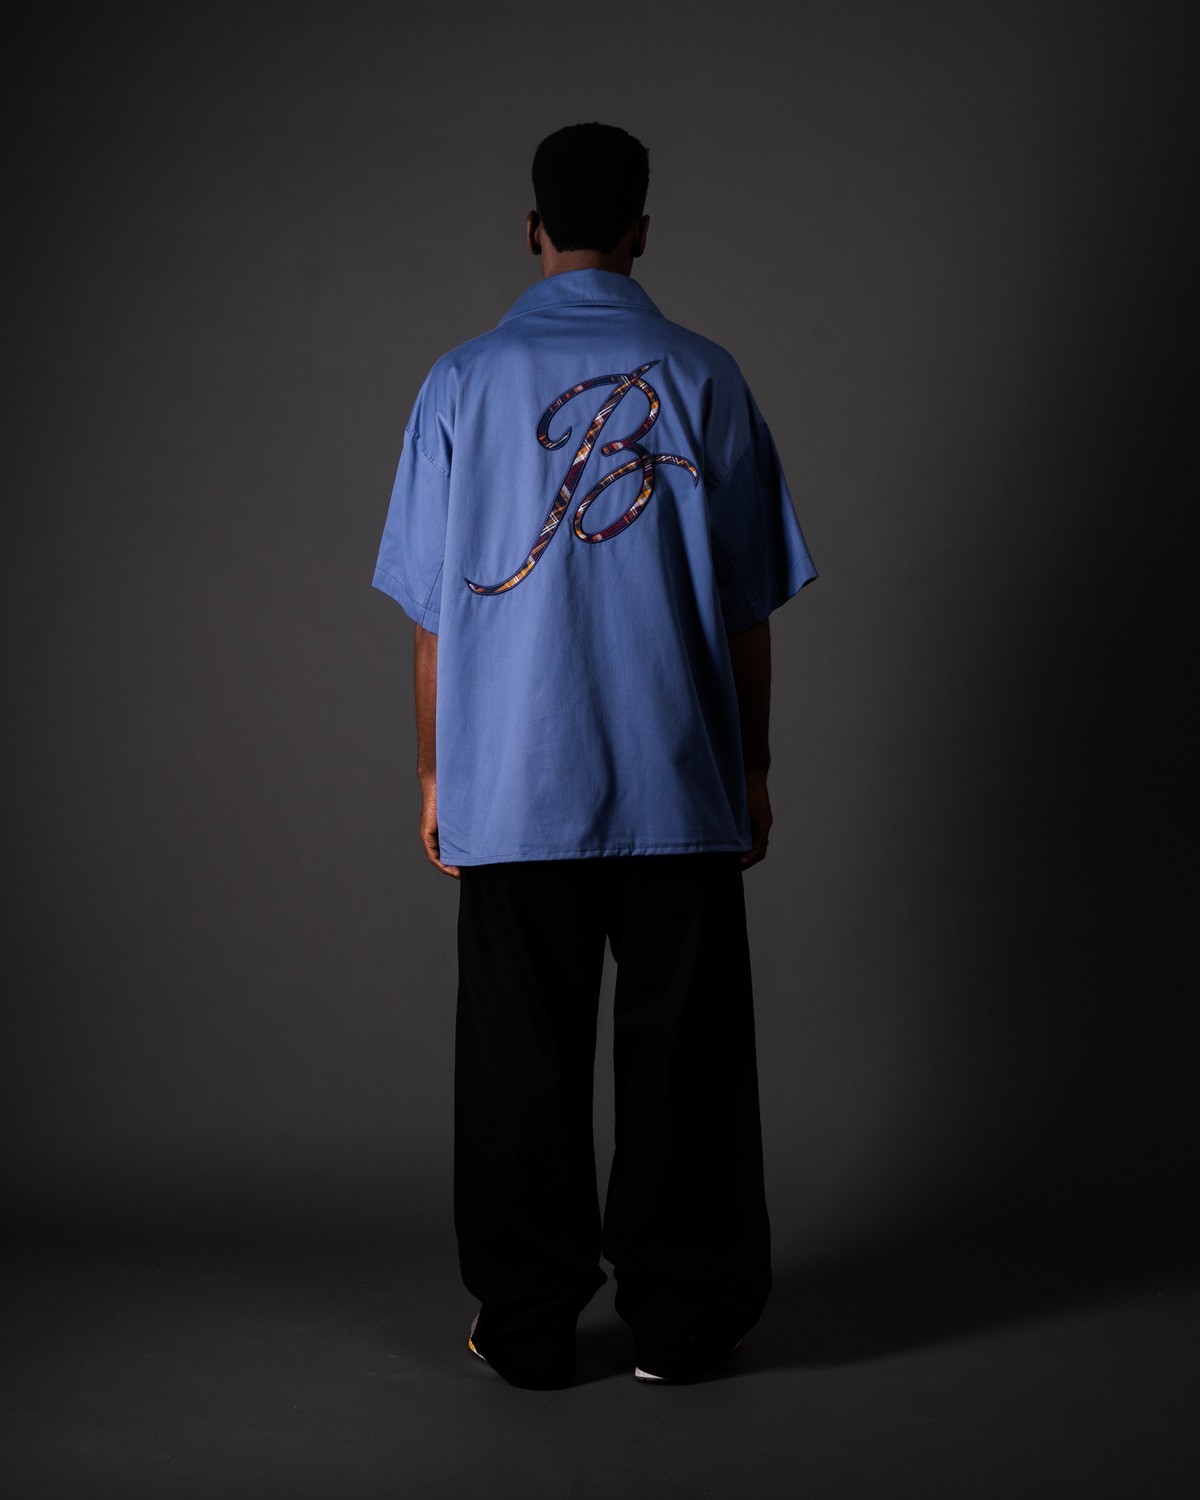 Camisa de Botão B Azul - BARRA CREW